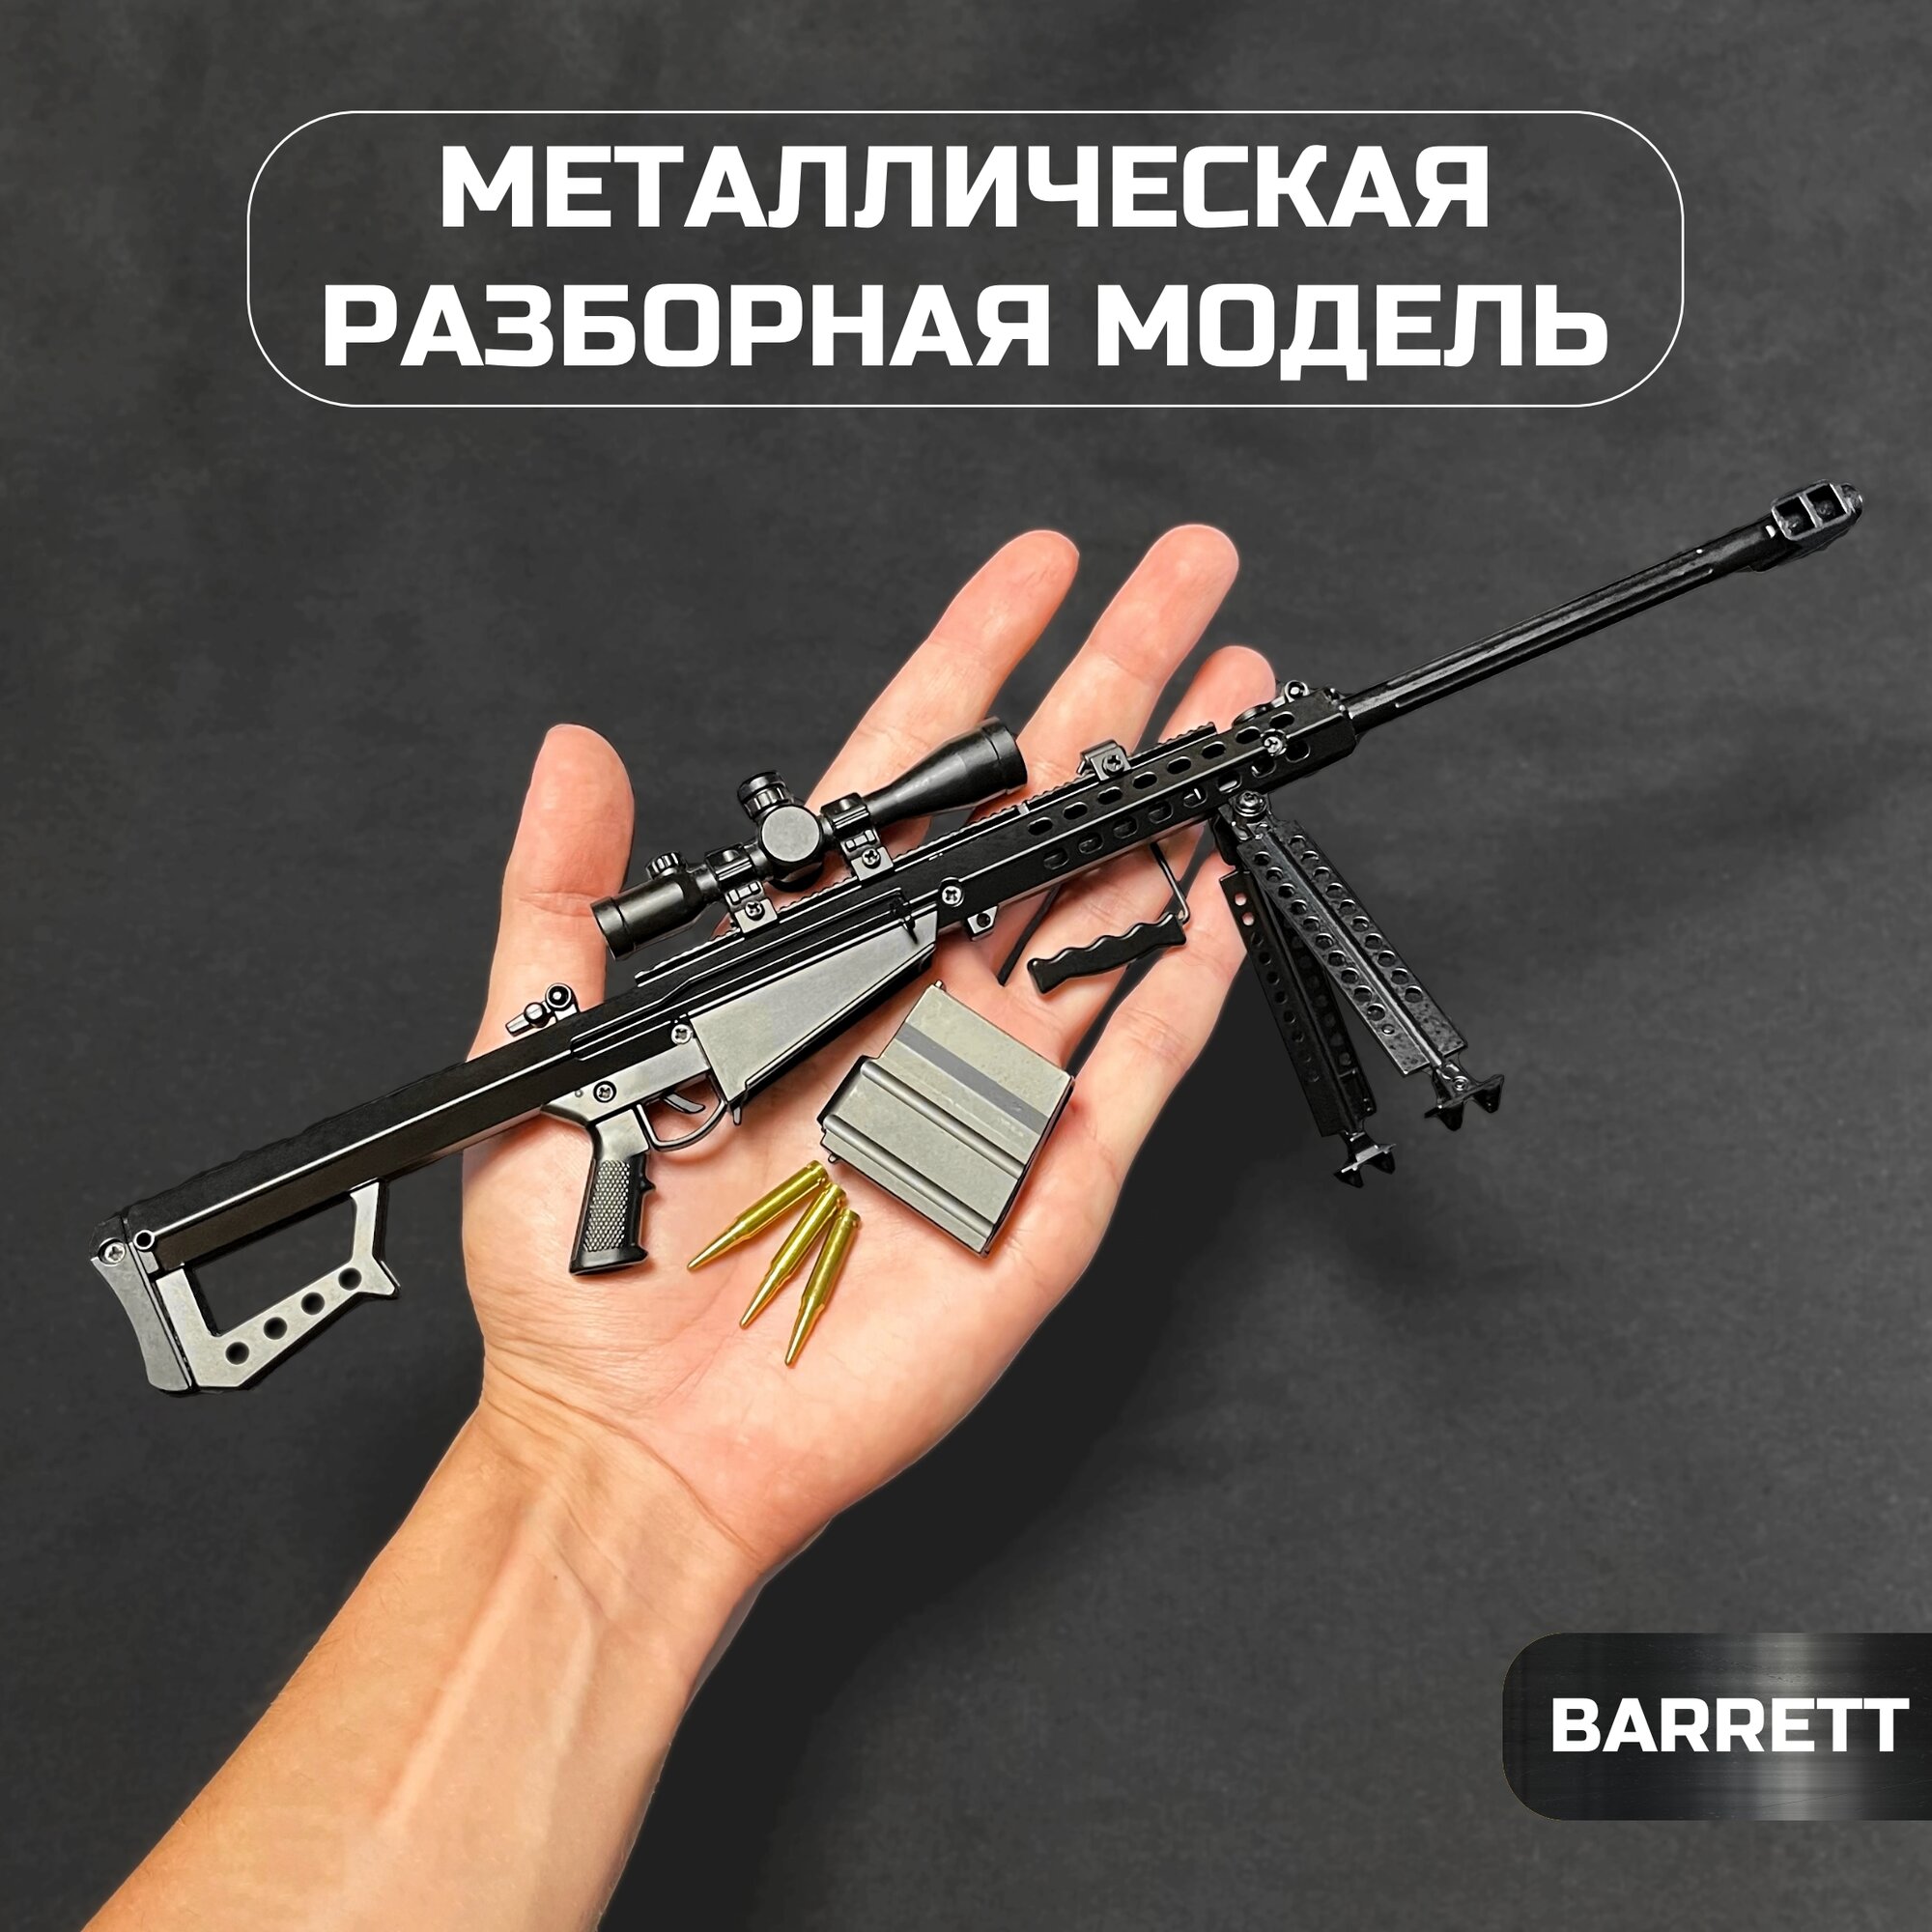 BARRETT - Металлическая разборная модель 1:3